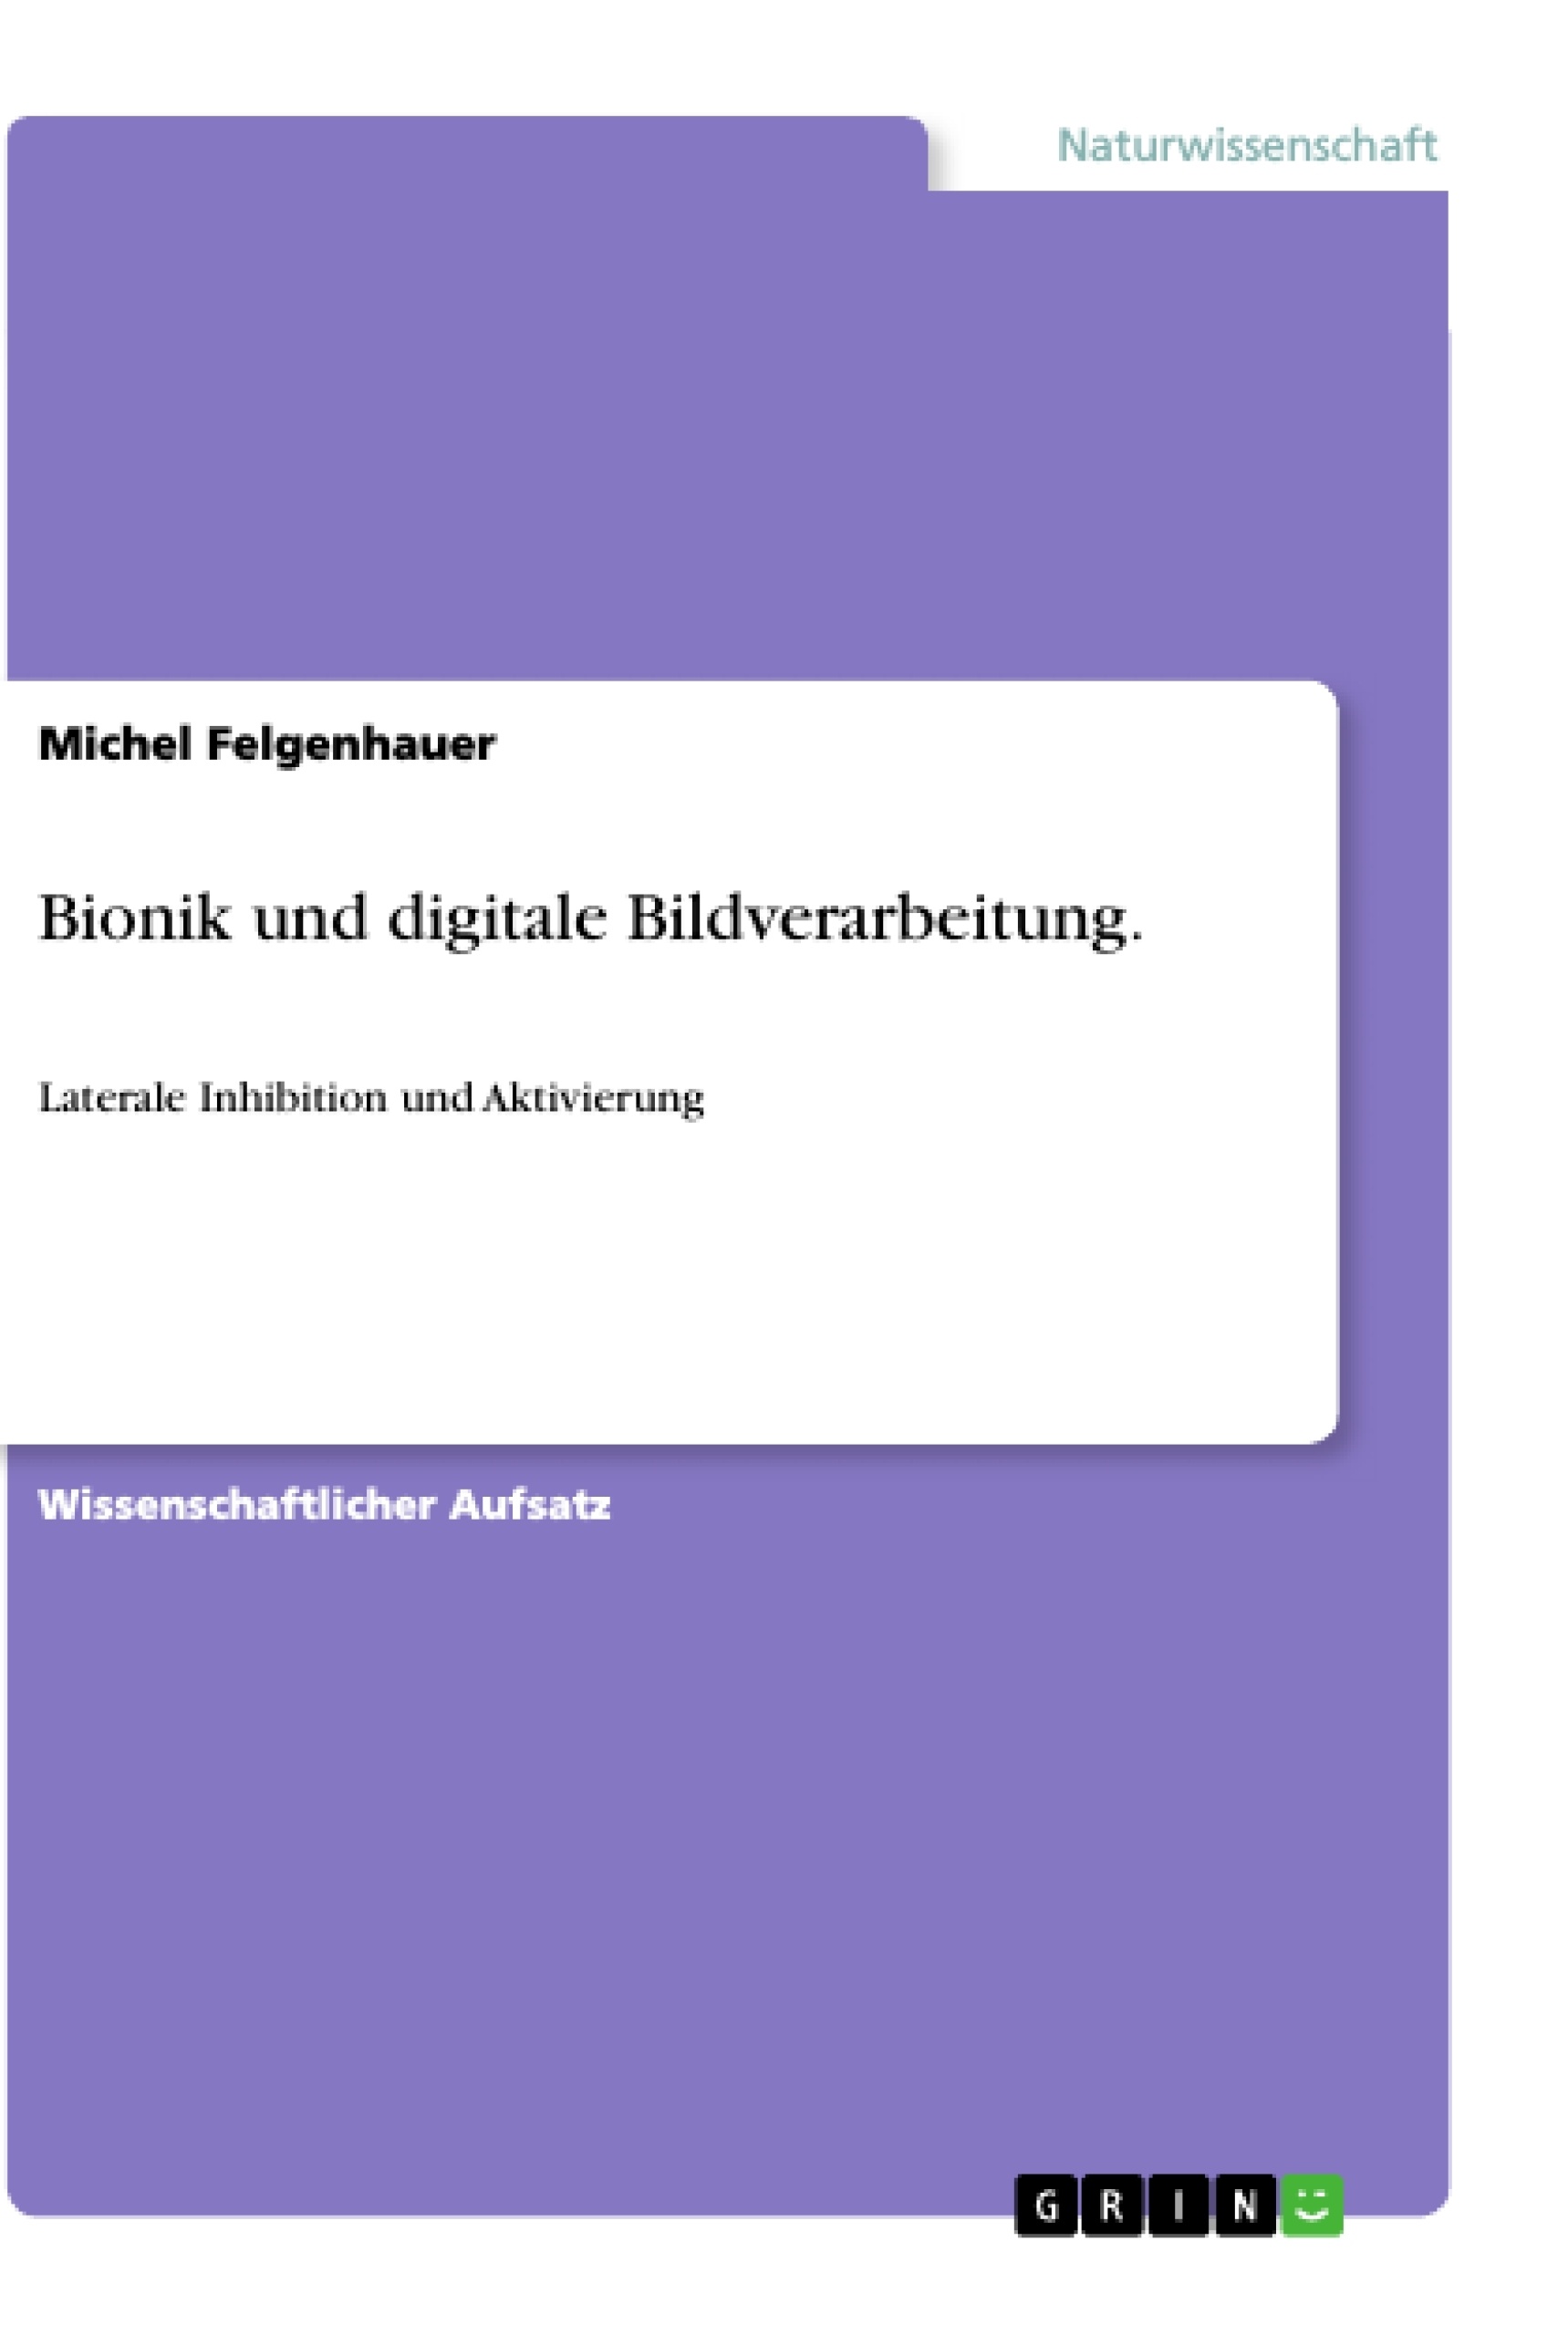 Title: Bionik und digitale Bildverarbeitung.